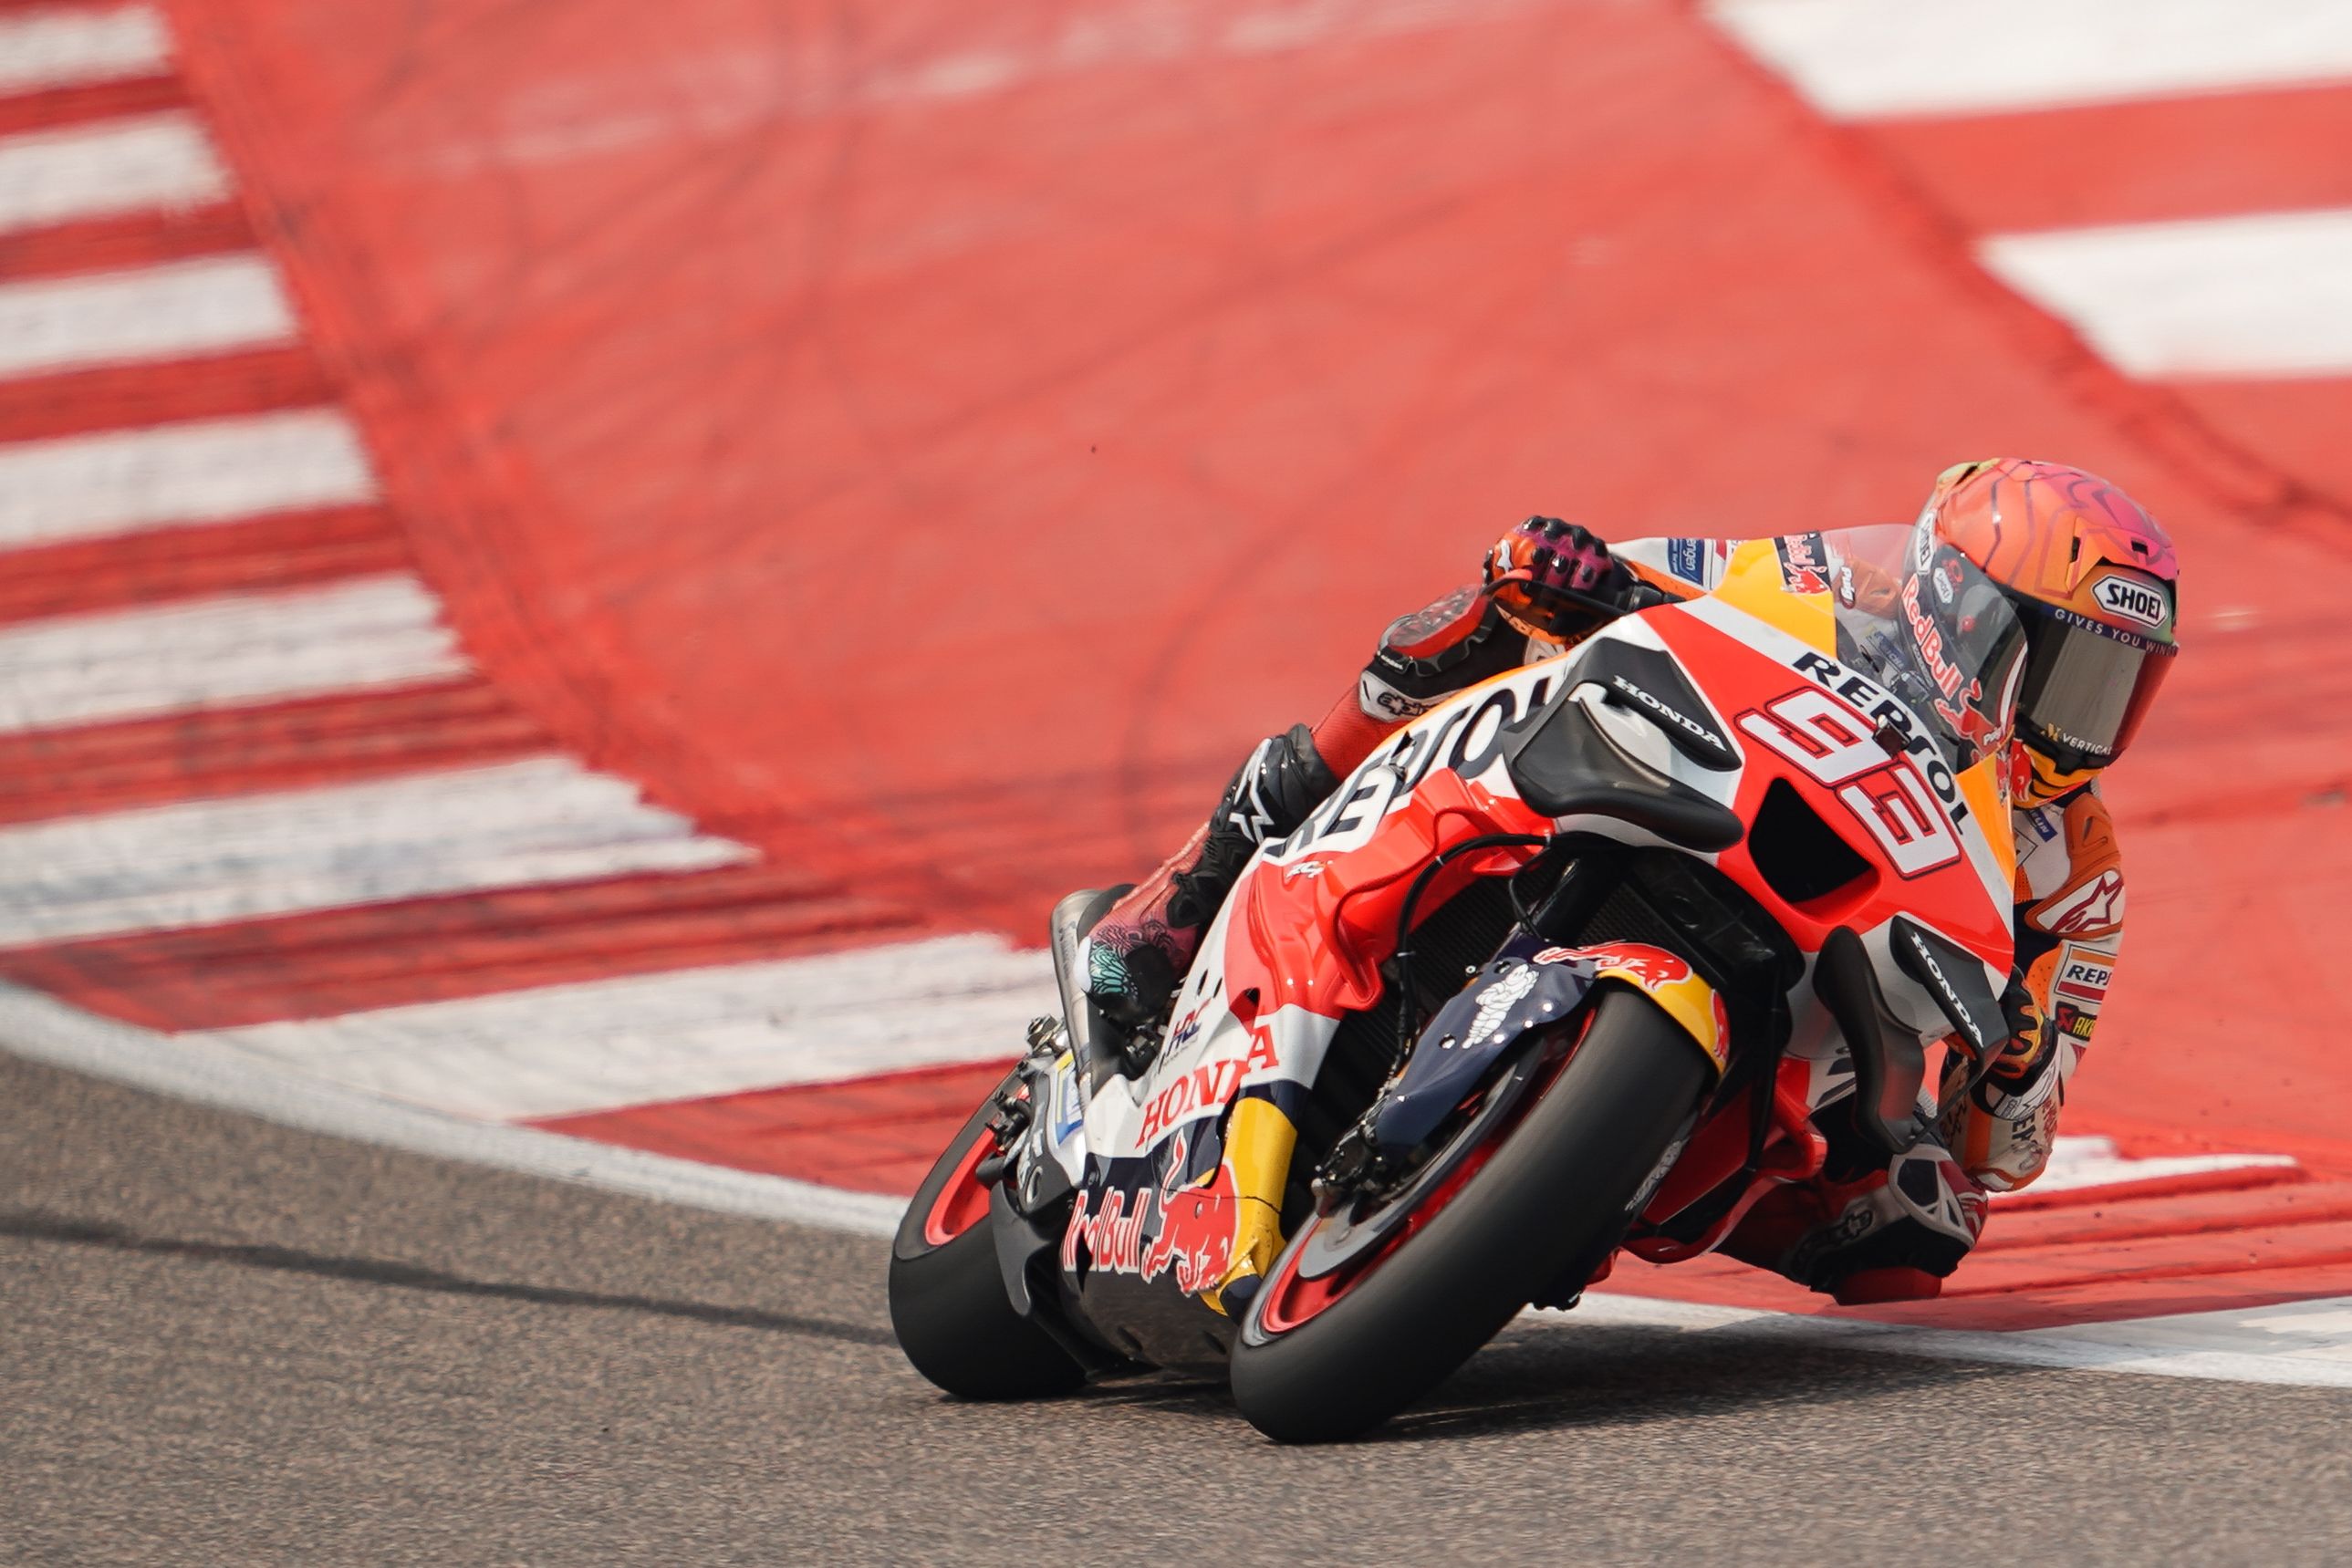 Jelang MotoGP Indonesia, Marquez Akan Klarifikasi Soal Statusnya